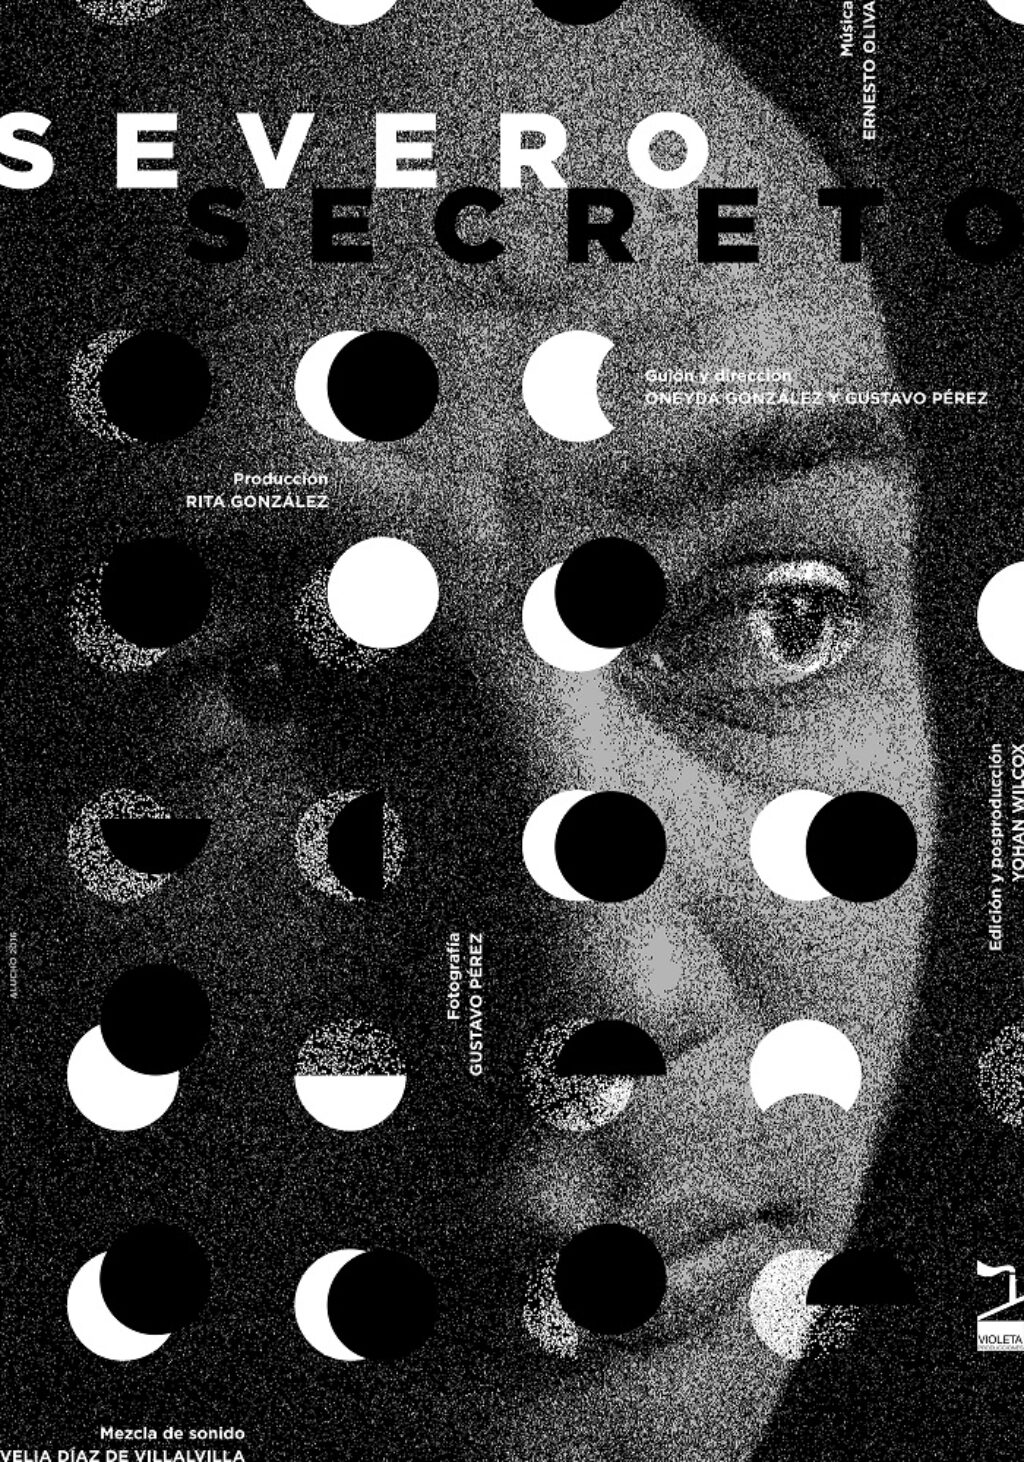 Cartel publicitario del documental Severo secreto, realizado por el artista Alejandro Fornés.